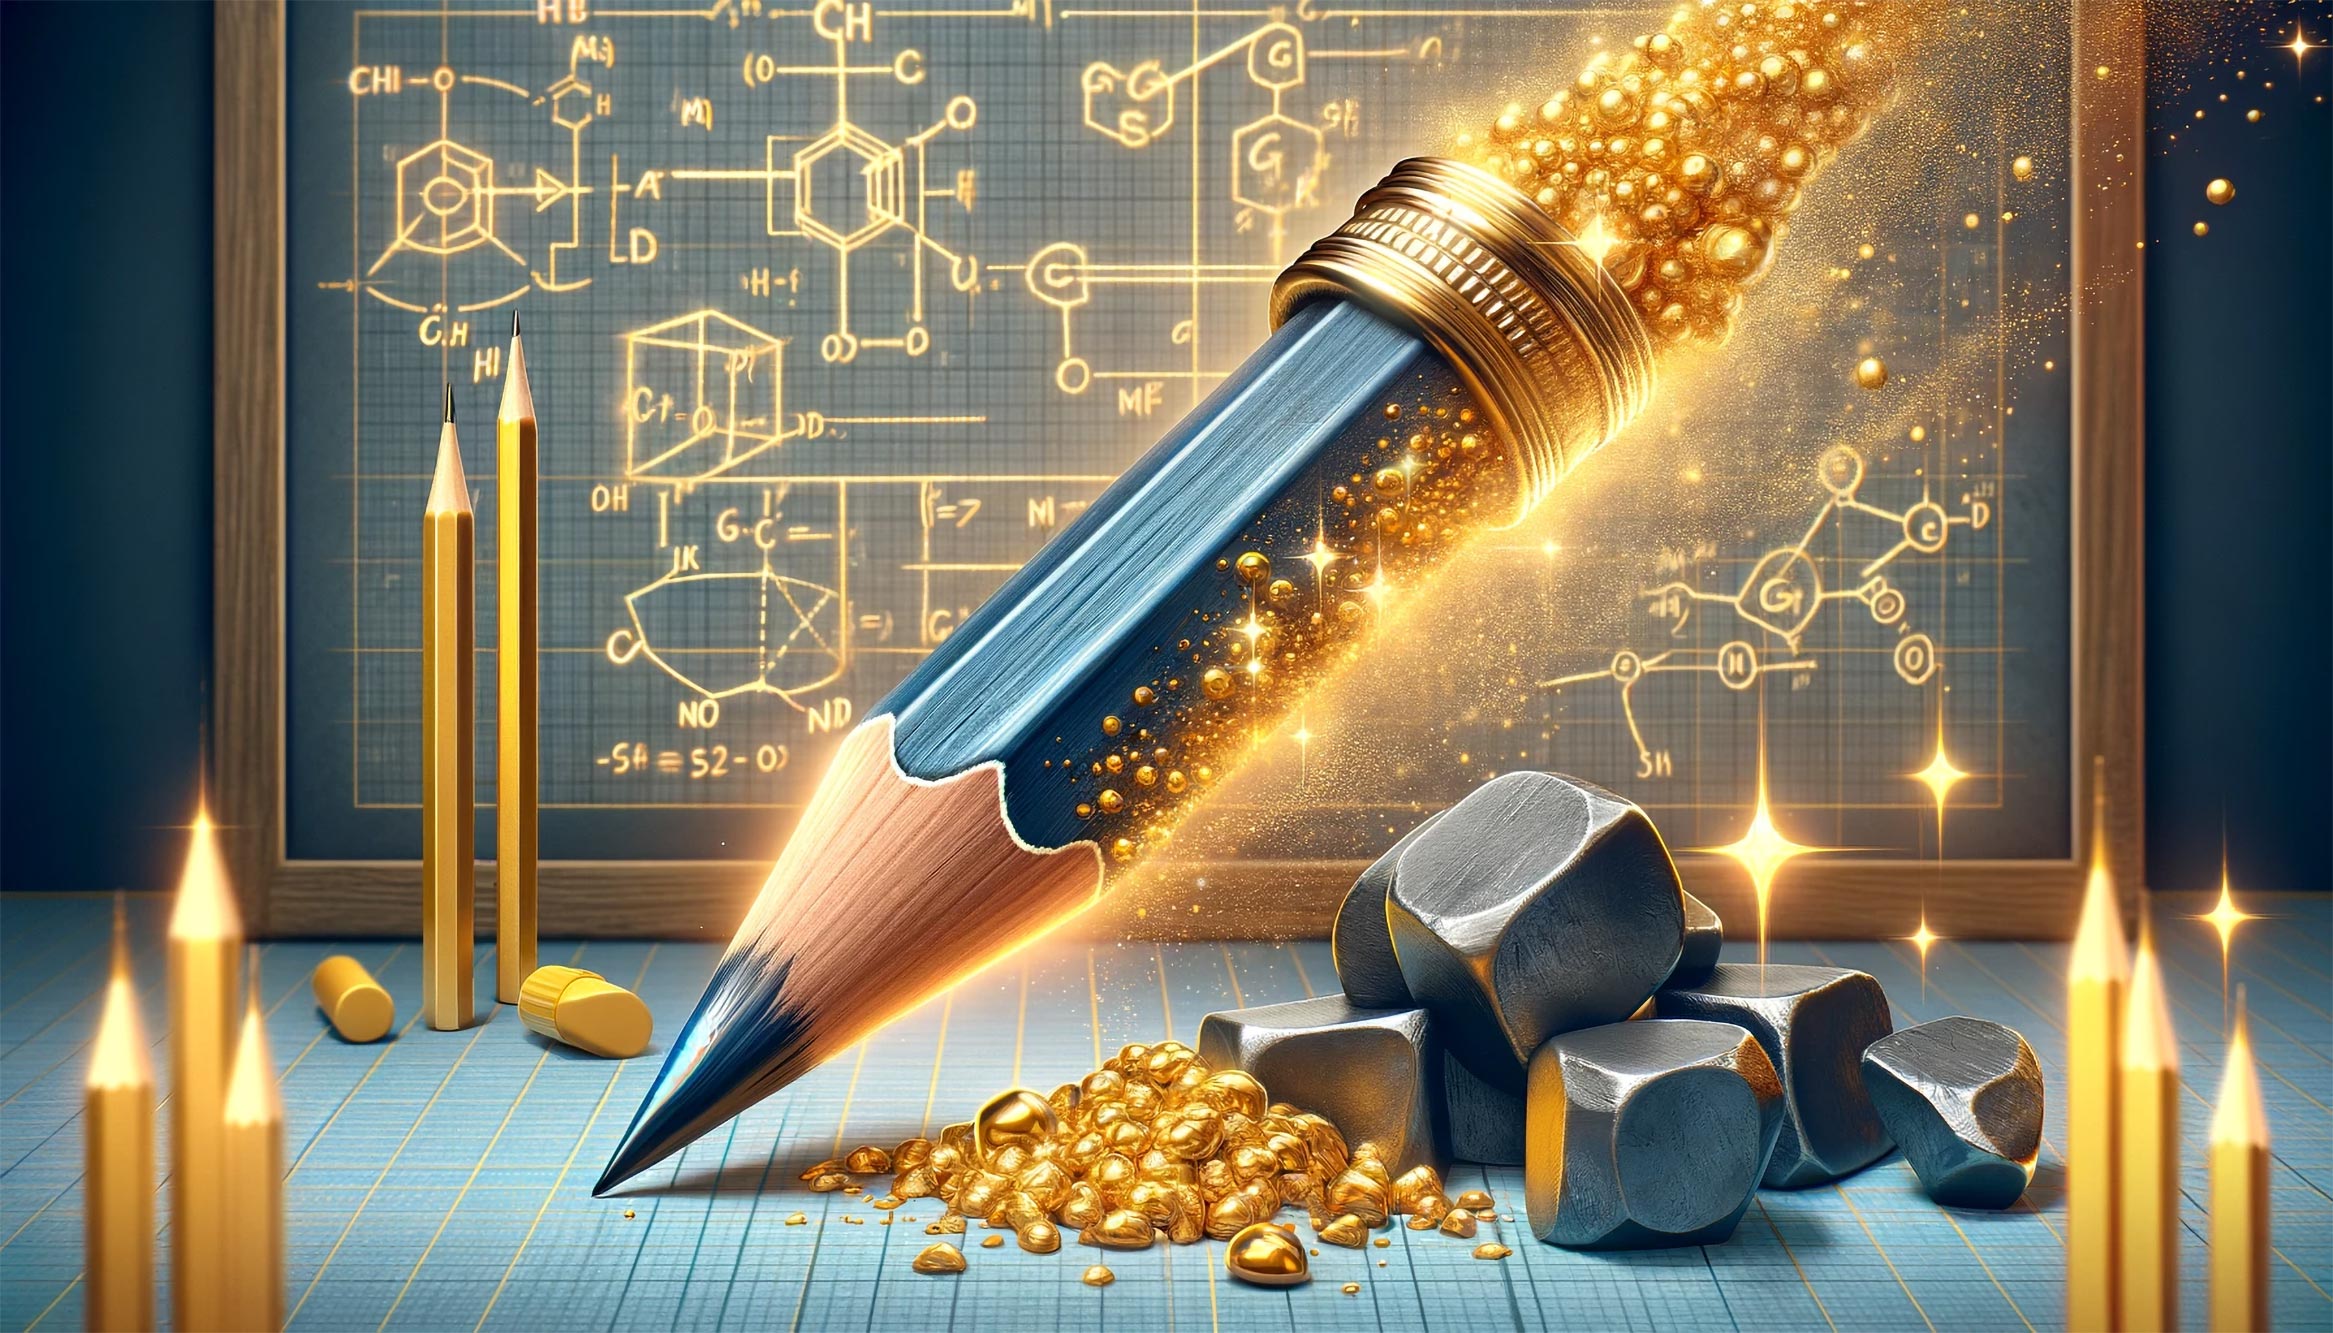 マサチューセッツ工科大学の物理学者は、鉛筆を電子的な「金」に変えます。